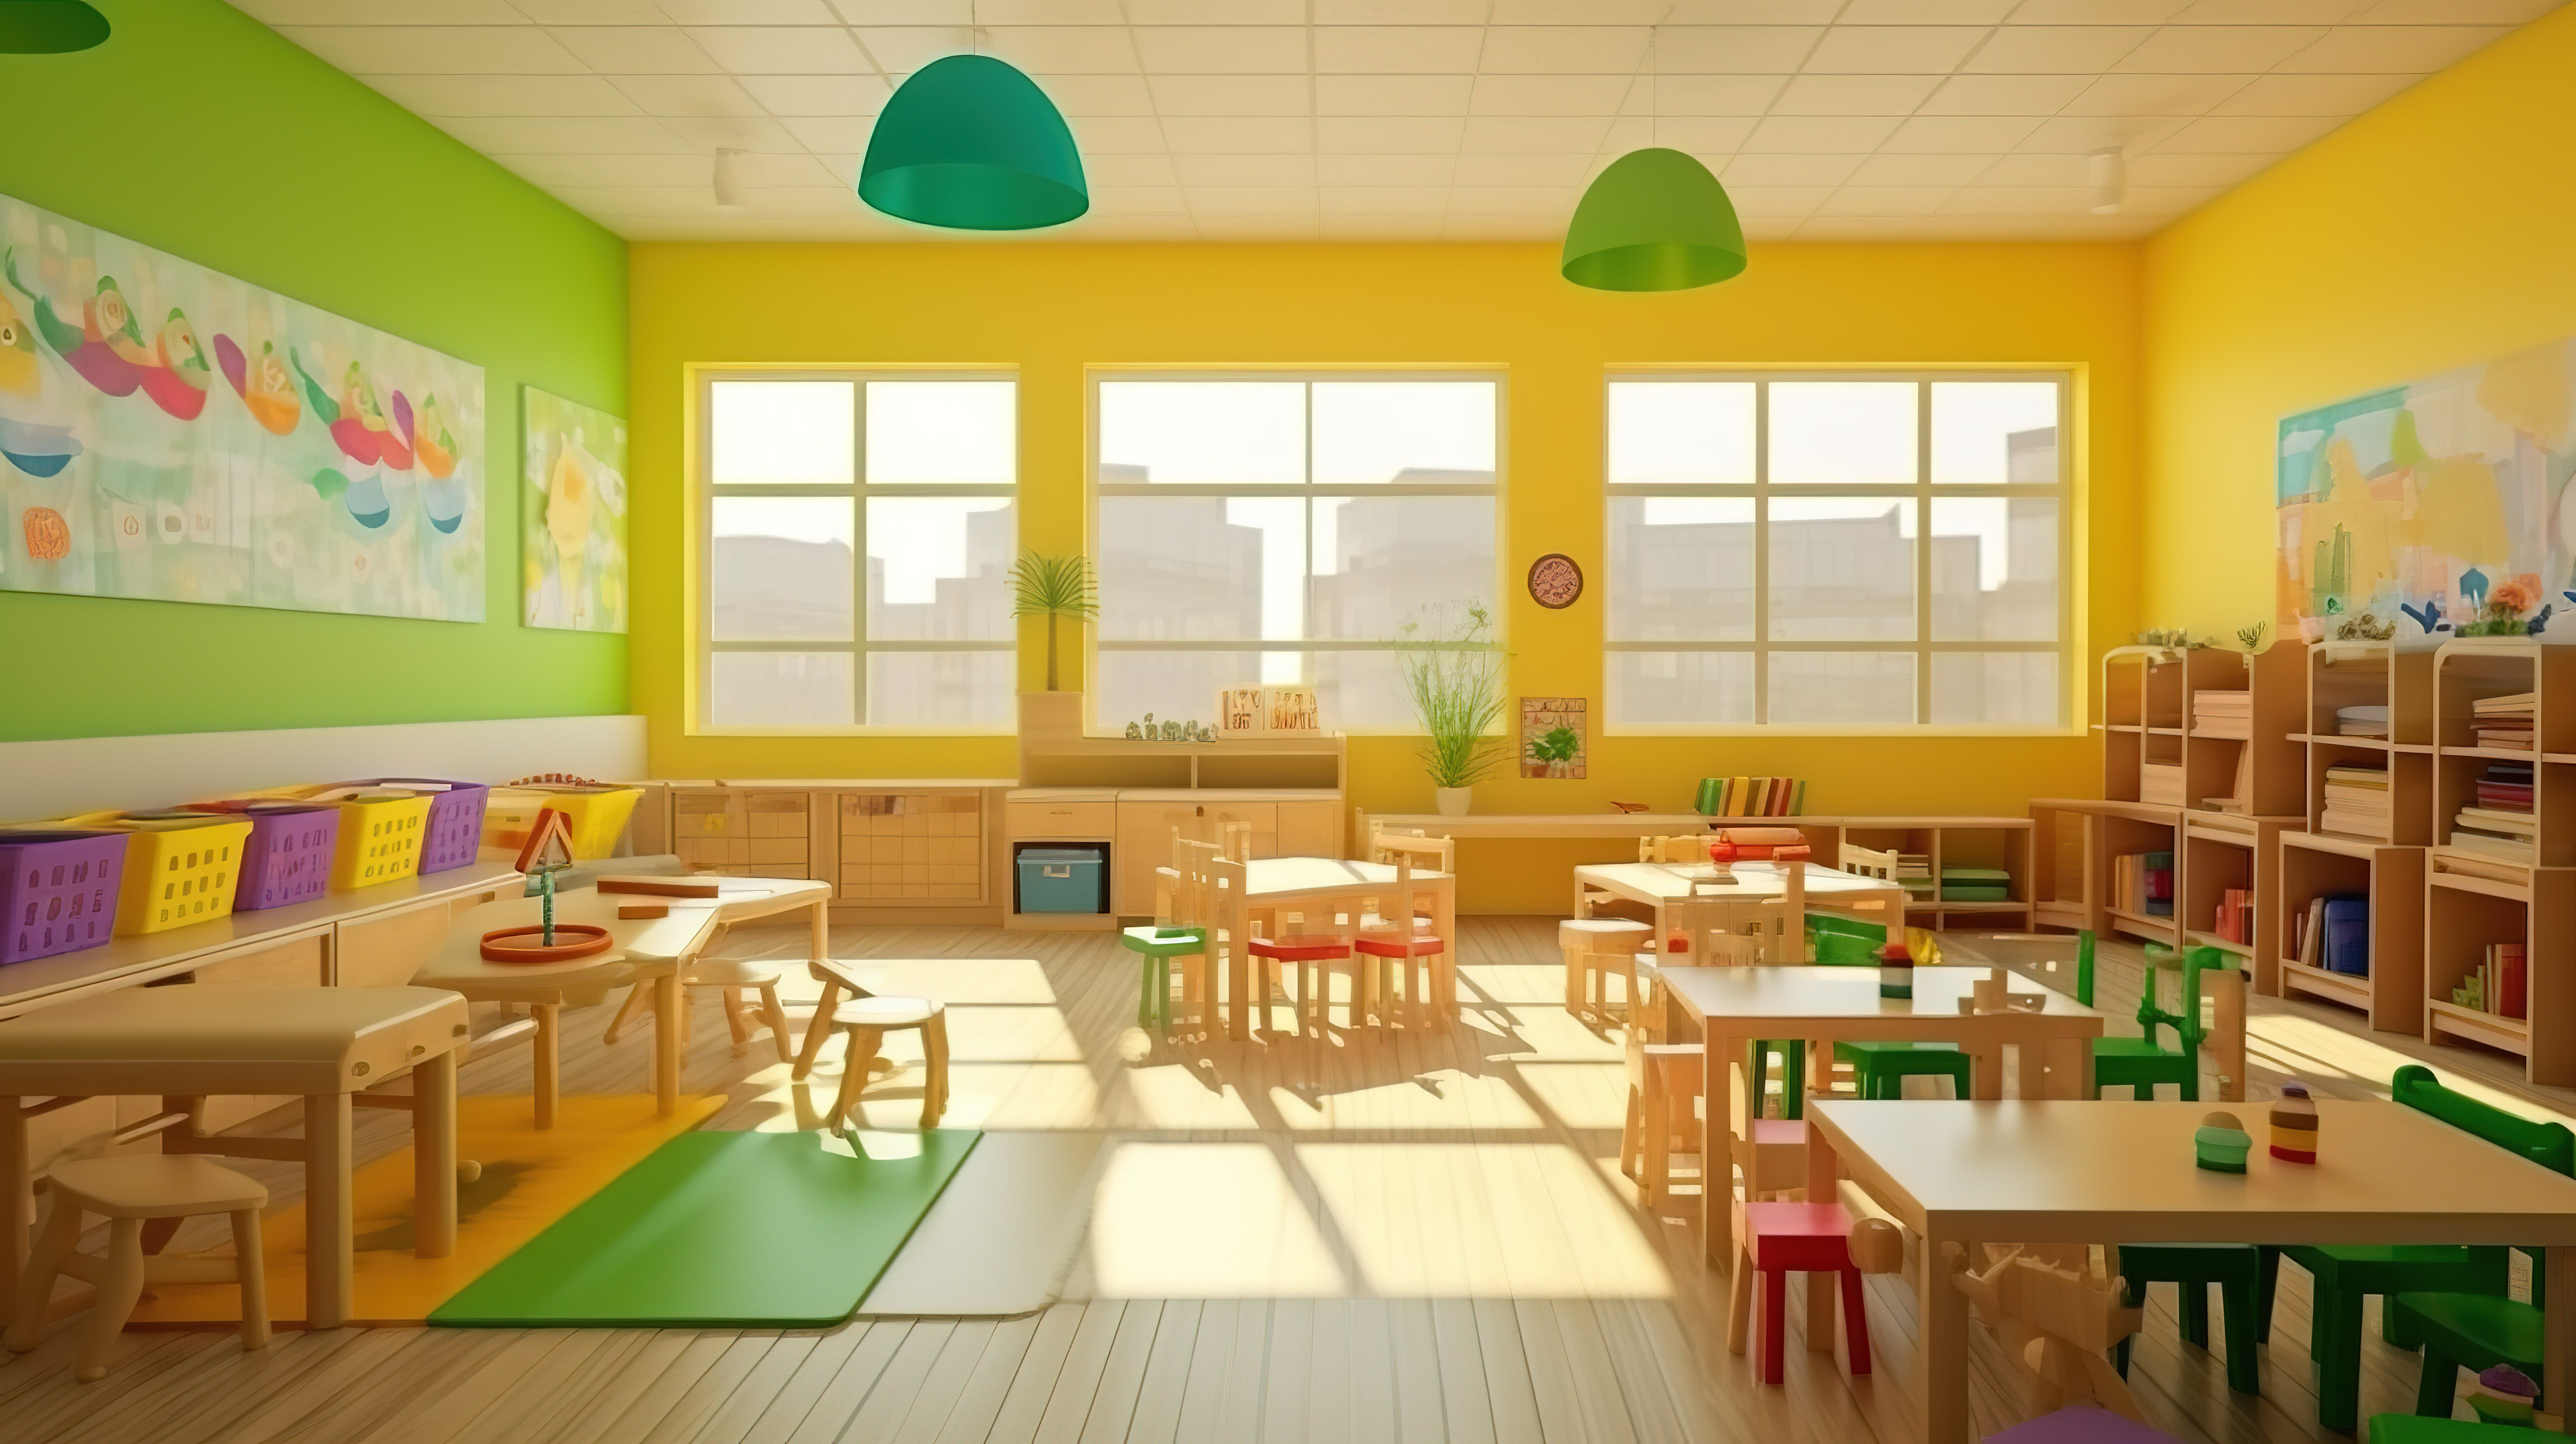 3d 可视化的幼儿园教室内部图片